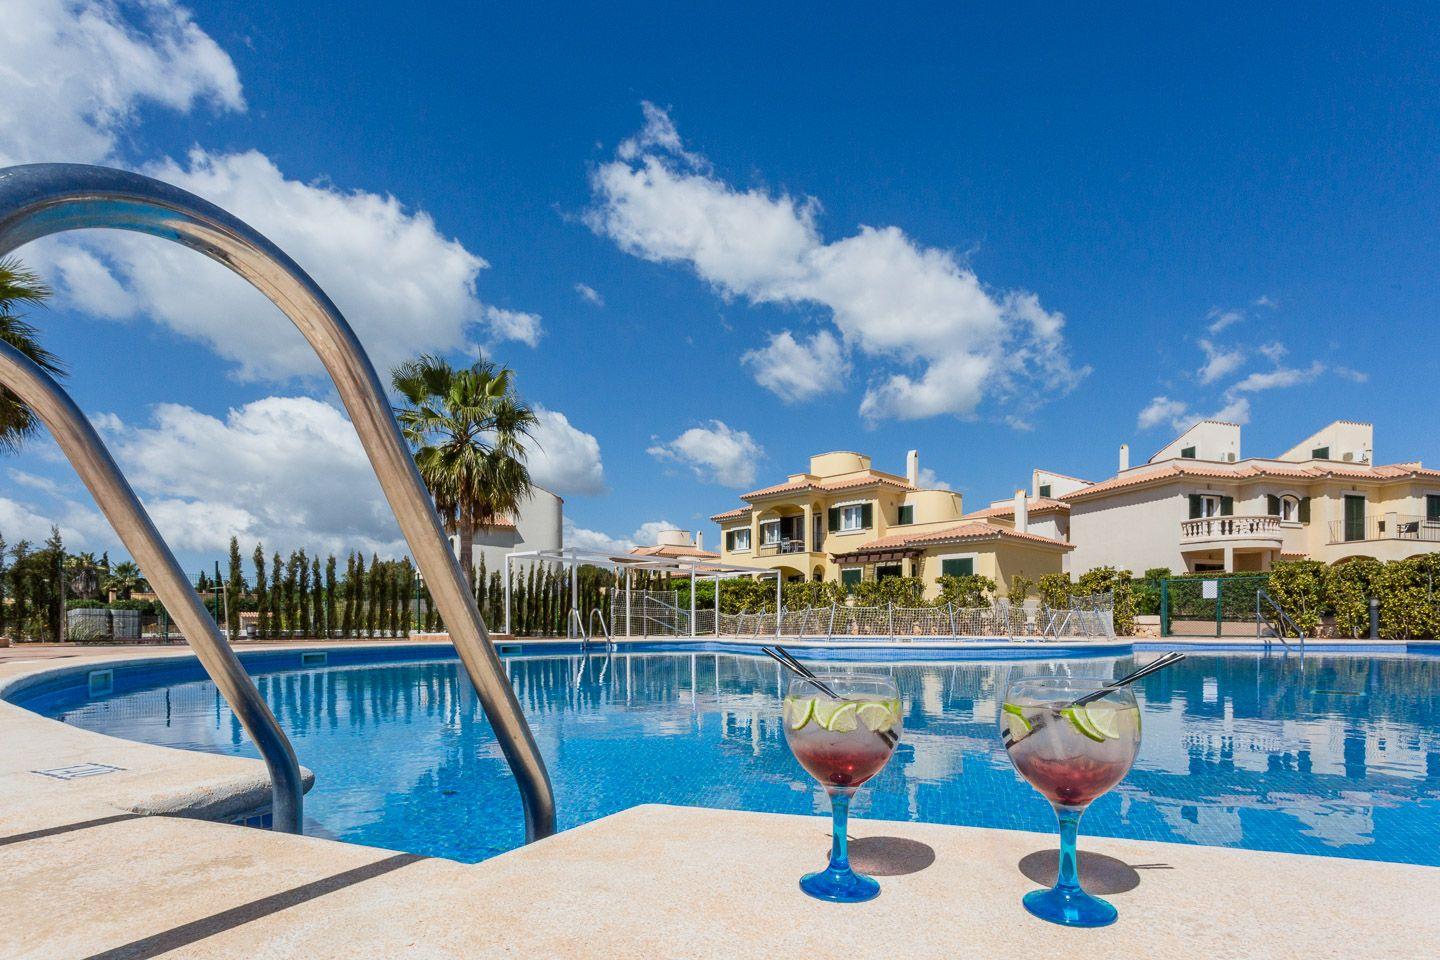 Wohnanlage mit mehreren Apartments und Poolbereich   Balearen